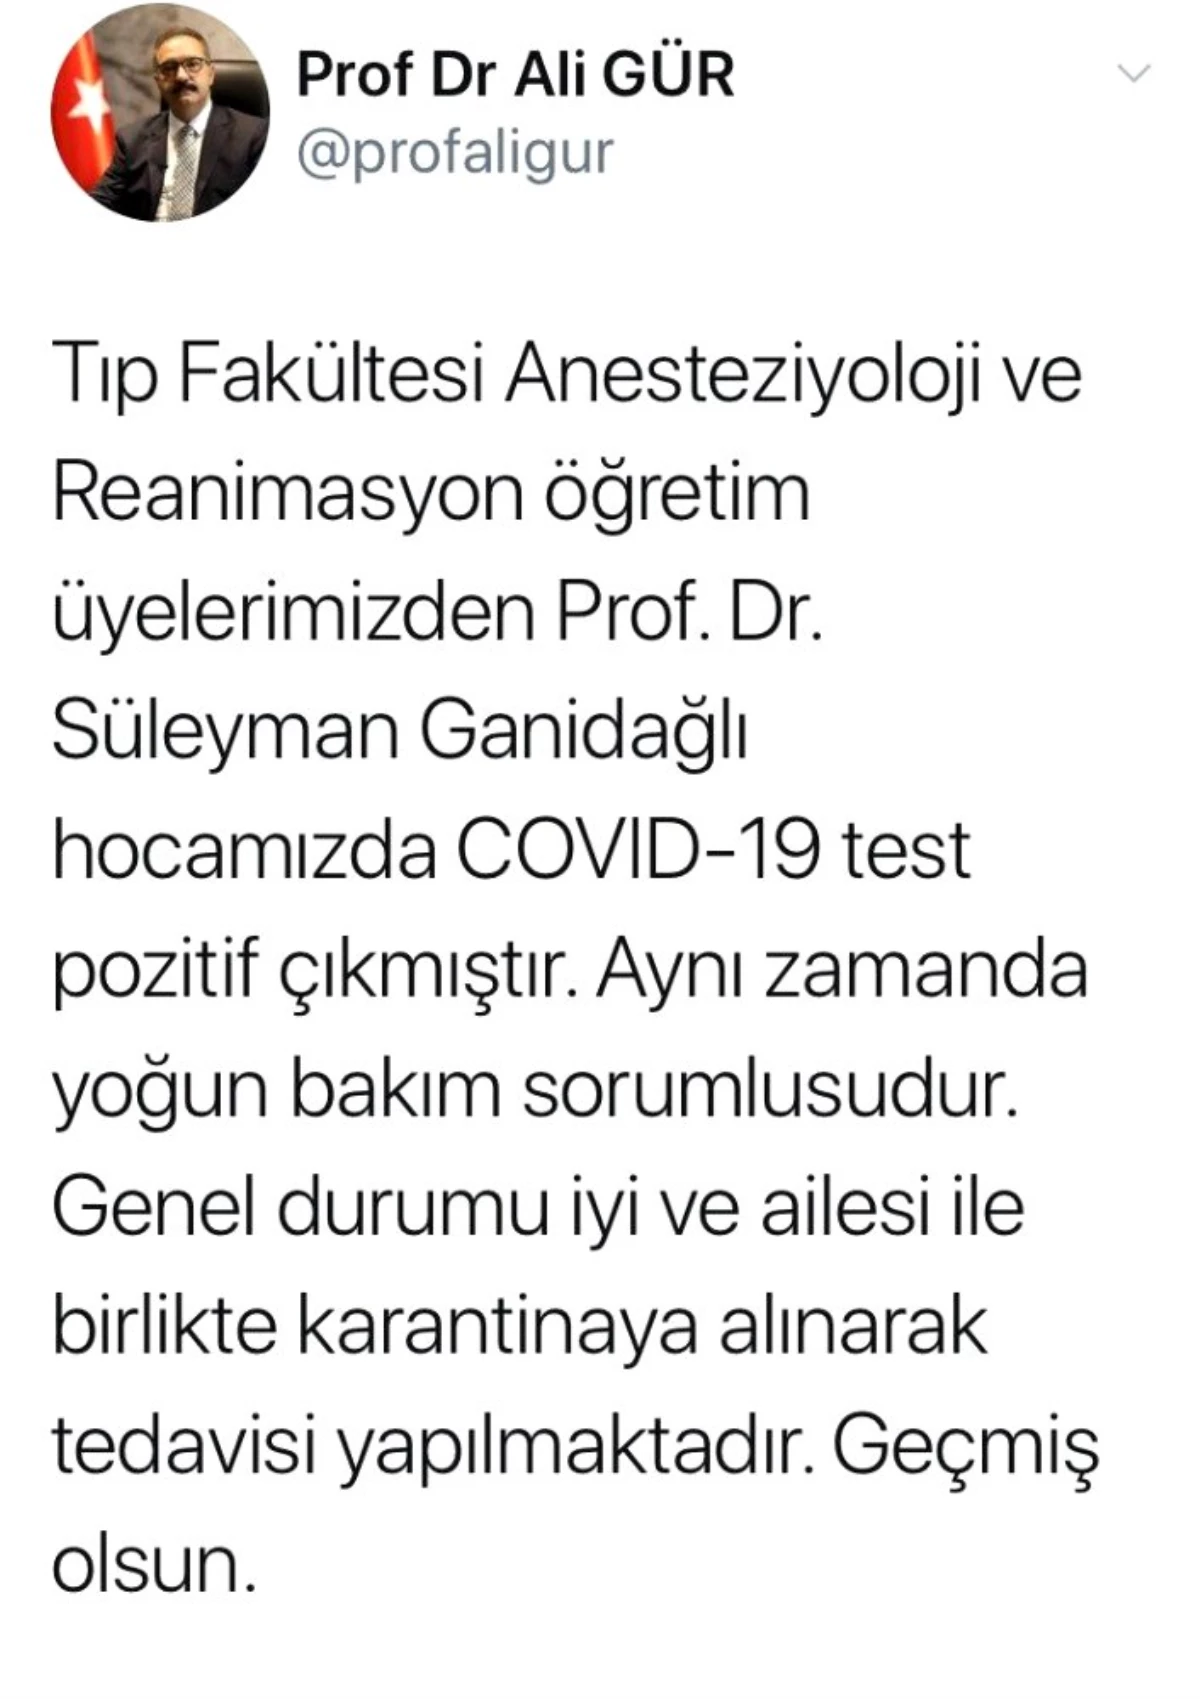 Yoğun bakım sorumlusu Prof. Dr. Ganidağlı, Korona virüse yakalandı